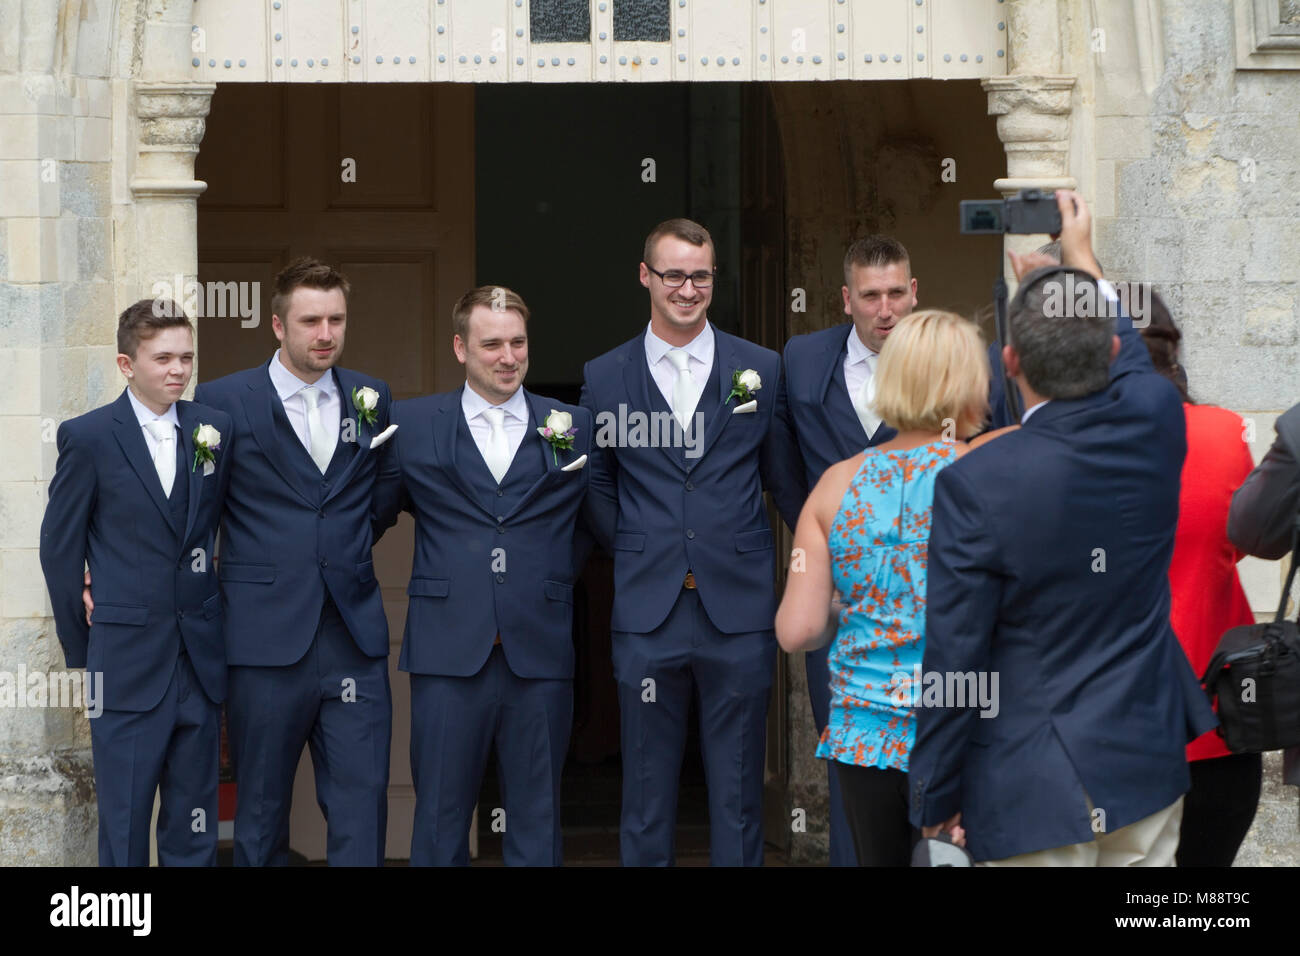 Le parti du marié portant des costumes bleus correspondant Banque D'Images